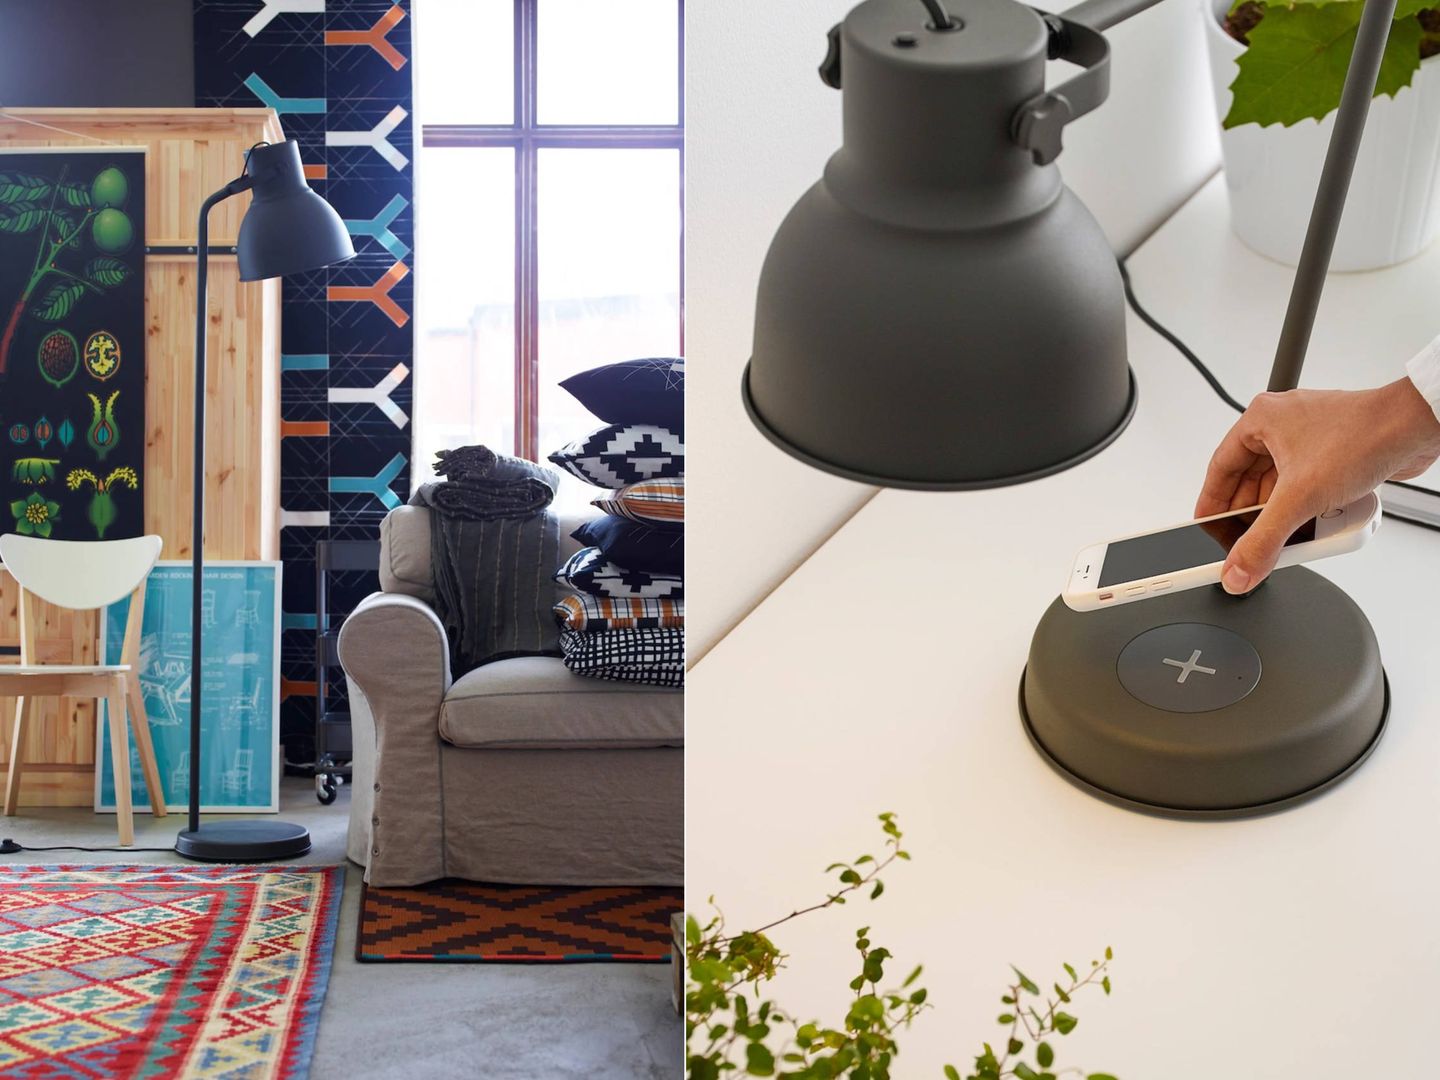 La propuesta de Ikea para integrar el estilo industrial en tu casa. (Cortesía)